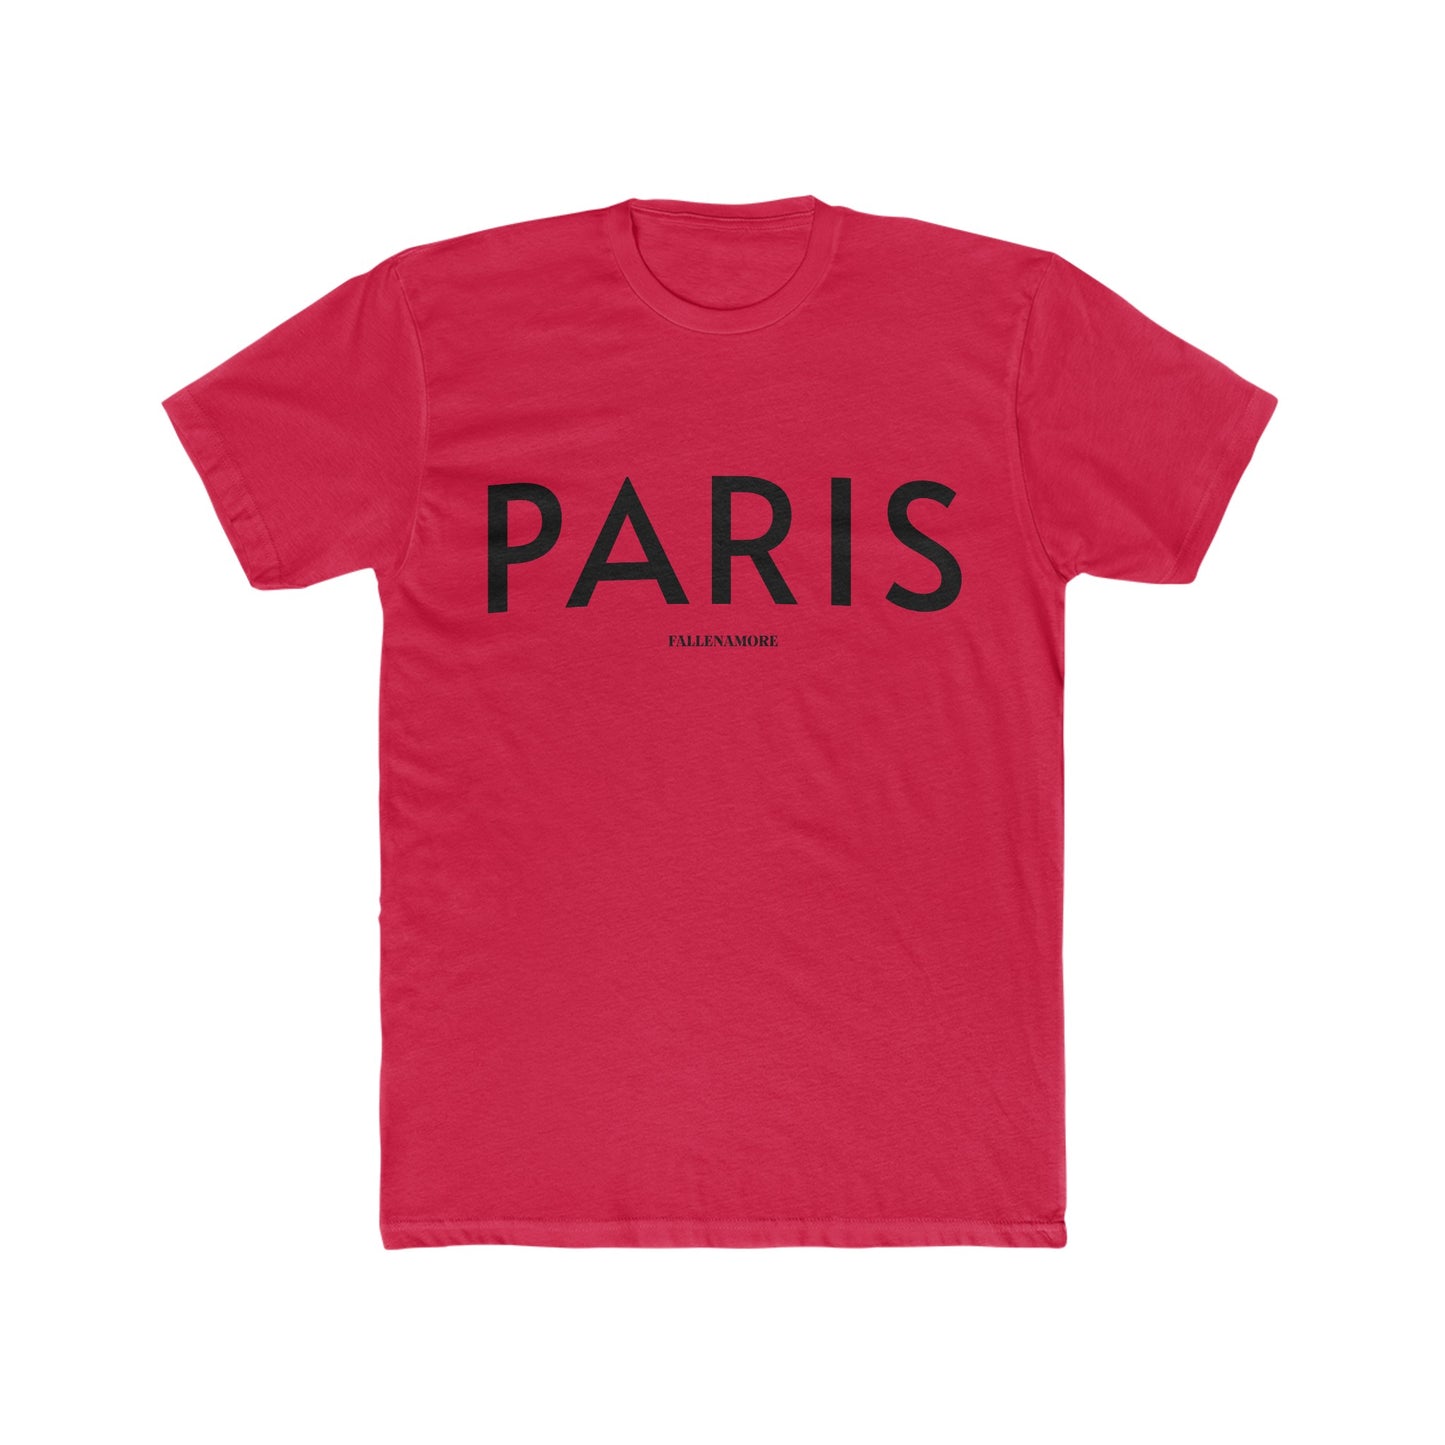 Paris Breathable Cotten Crewneck Tee: Comfy Parisian Chic